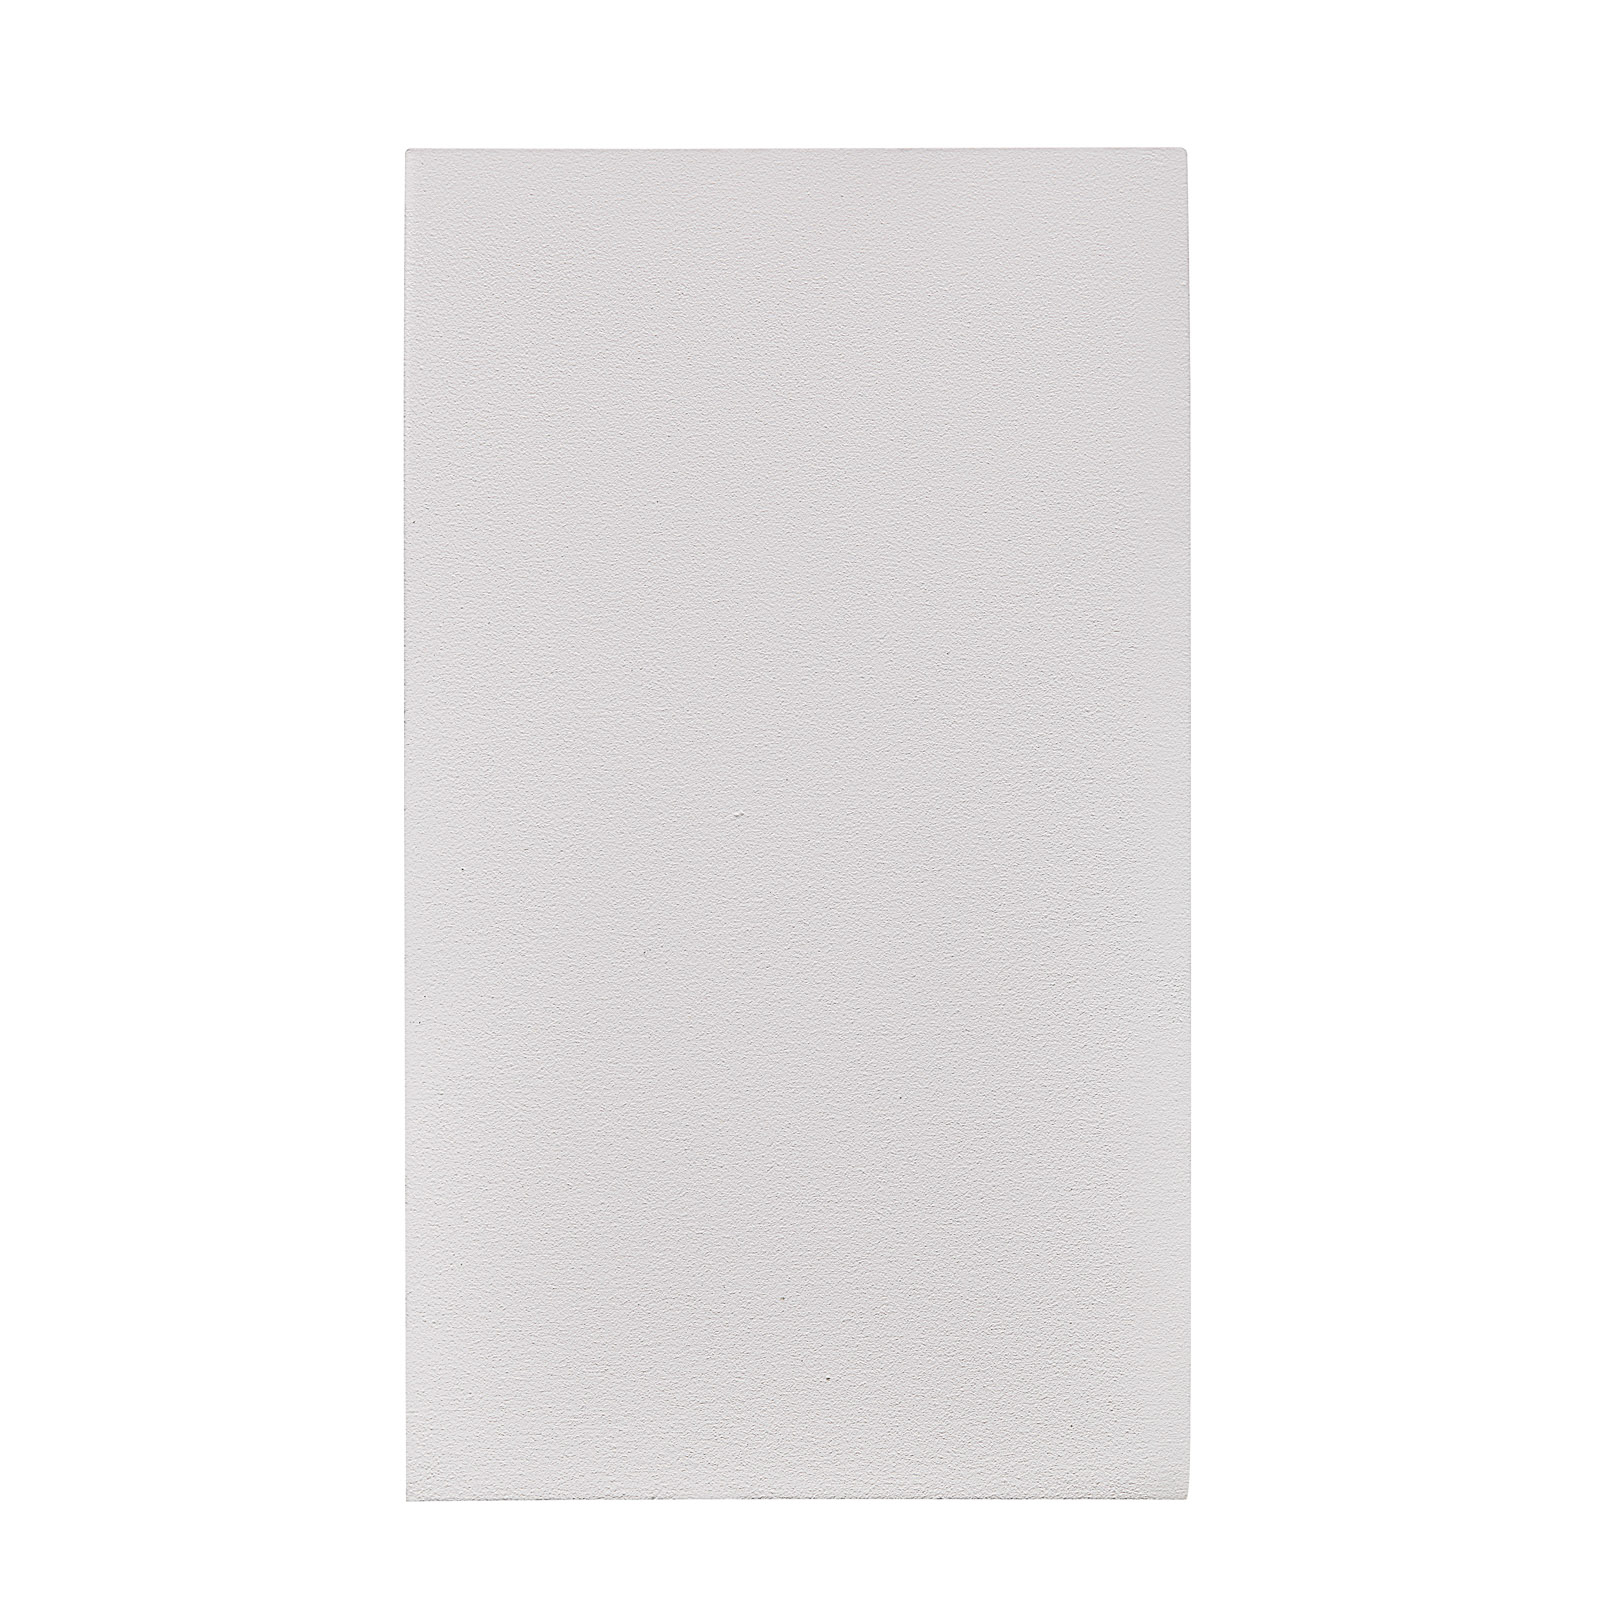 Venkovní světlo Canto Maxi Kubi 2, 17 cm, bílá